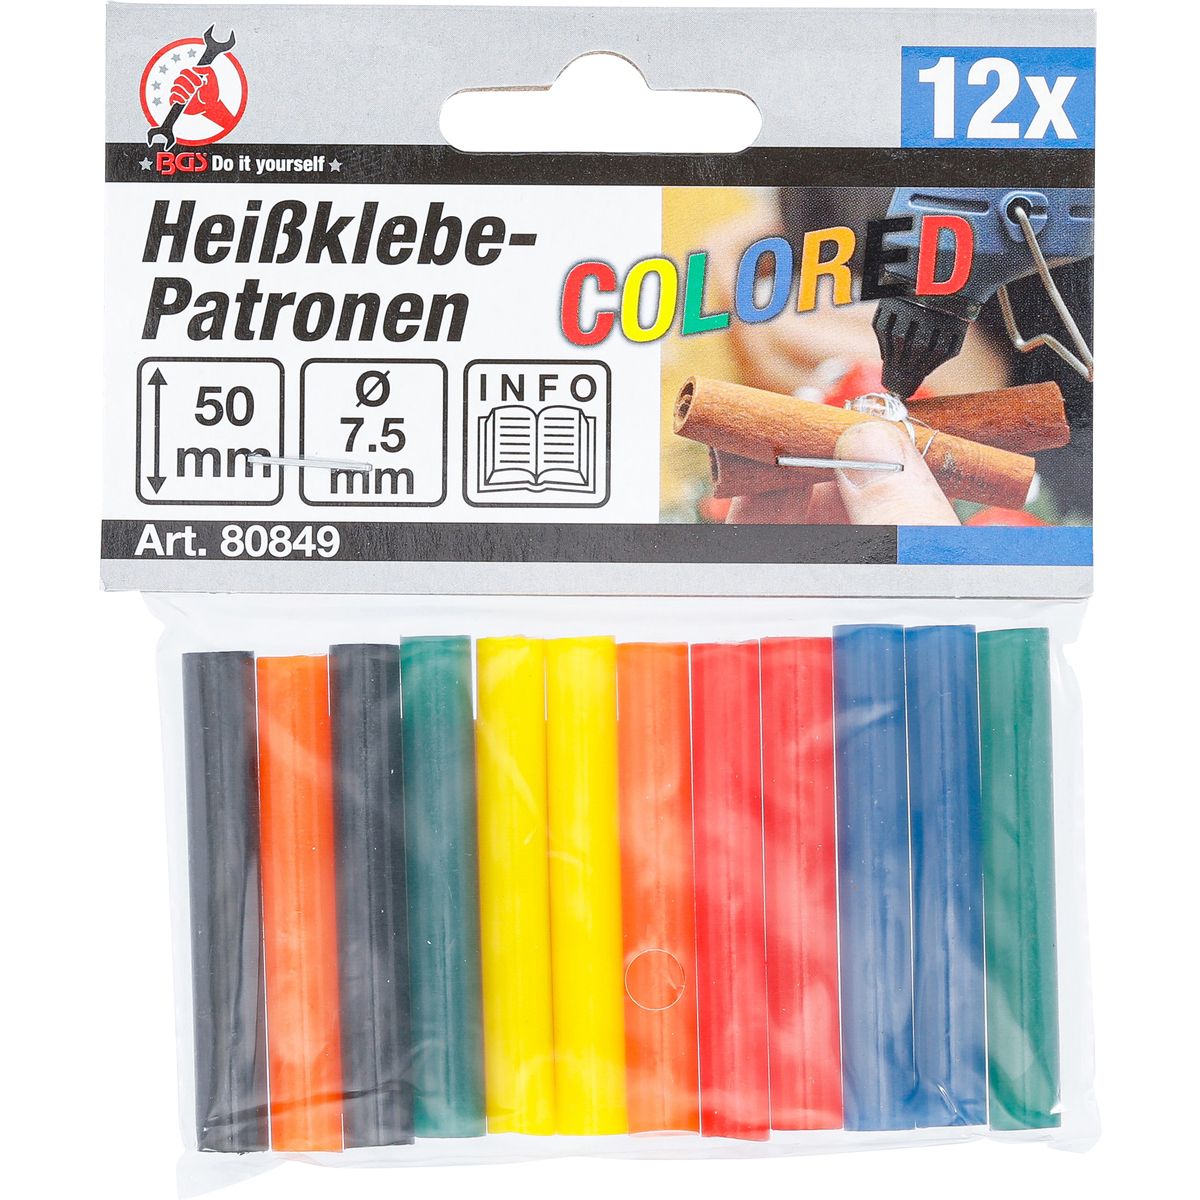 Bâtonnets de colle chaude | multicolores | Ø 7,5 mm, 50 mm | 12 pièces